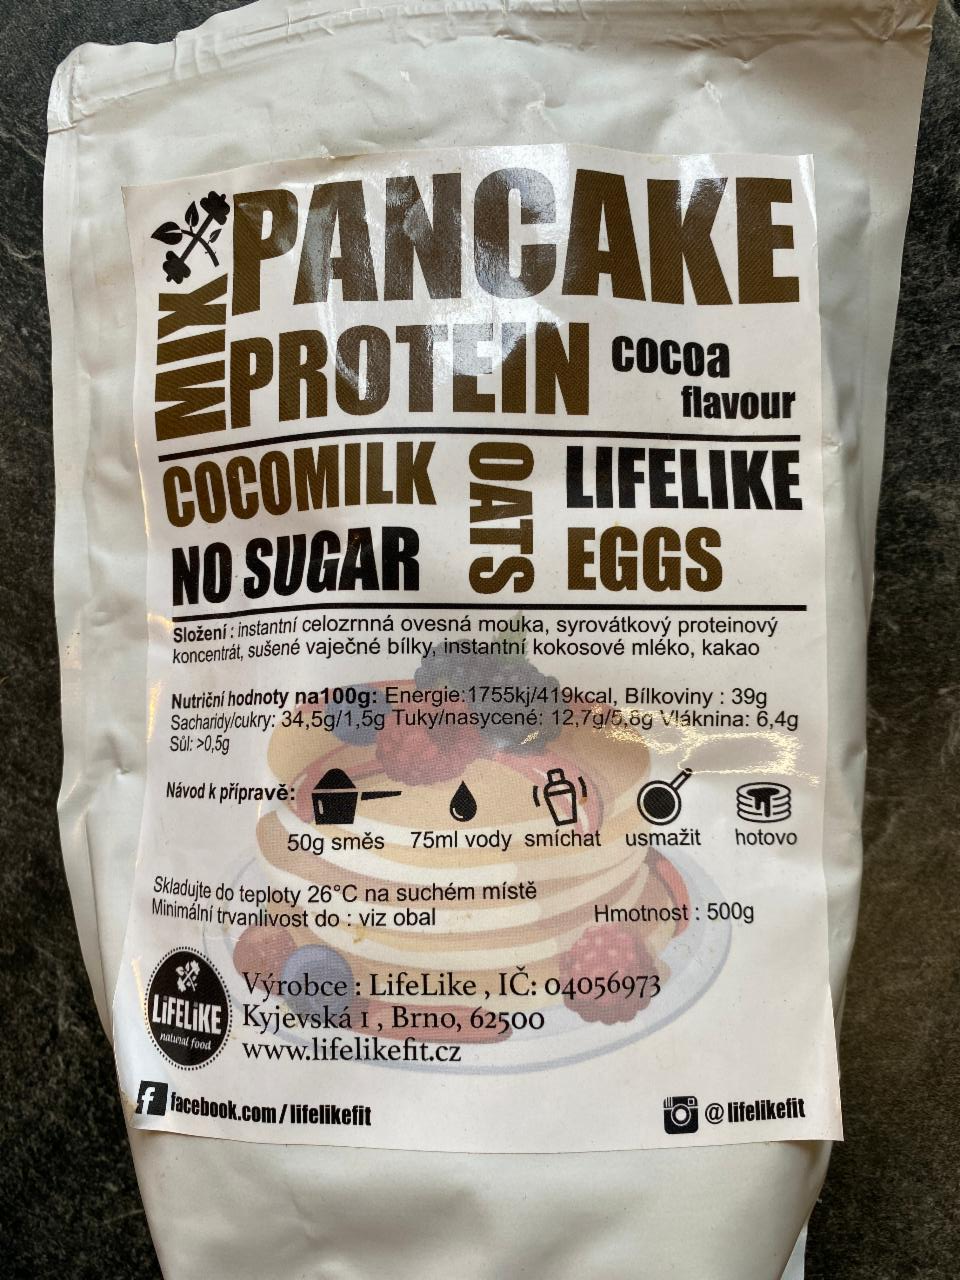 Fotografie - Mix pancake protein cocoa flavour LifeLike